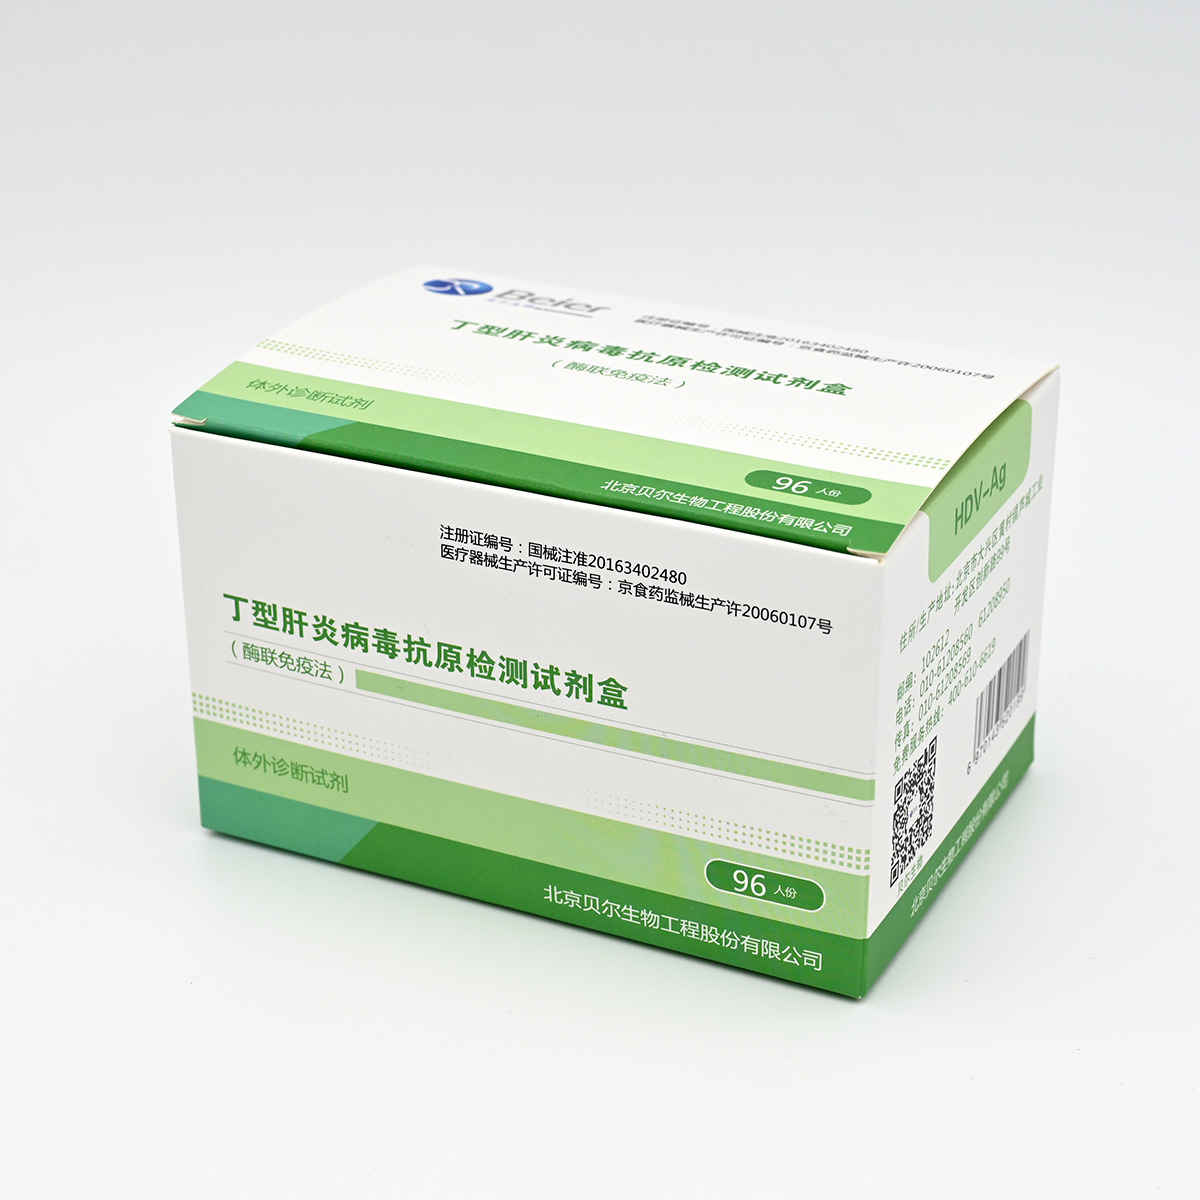 【贝尔】丁型肝炎病毒抗原检测试剂盒(HDV)(酶联免疫法)